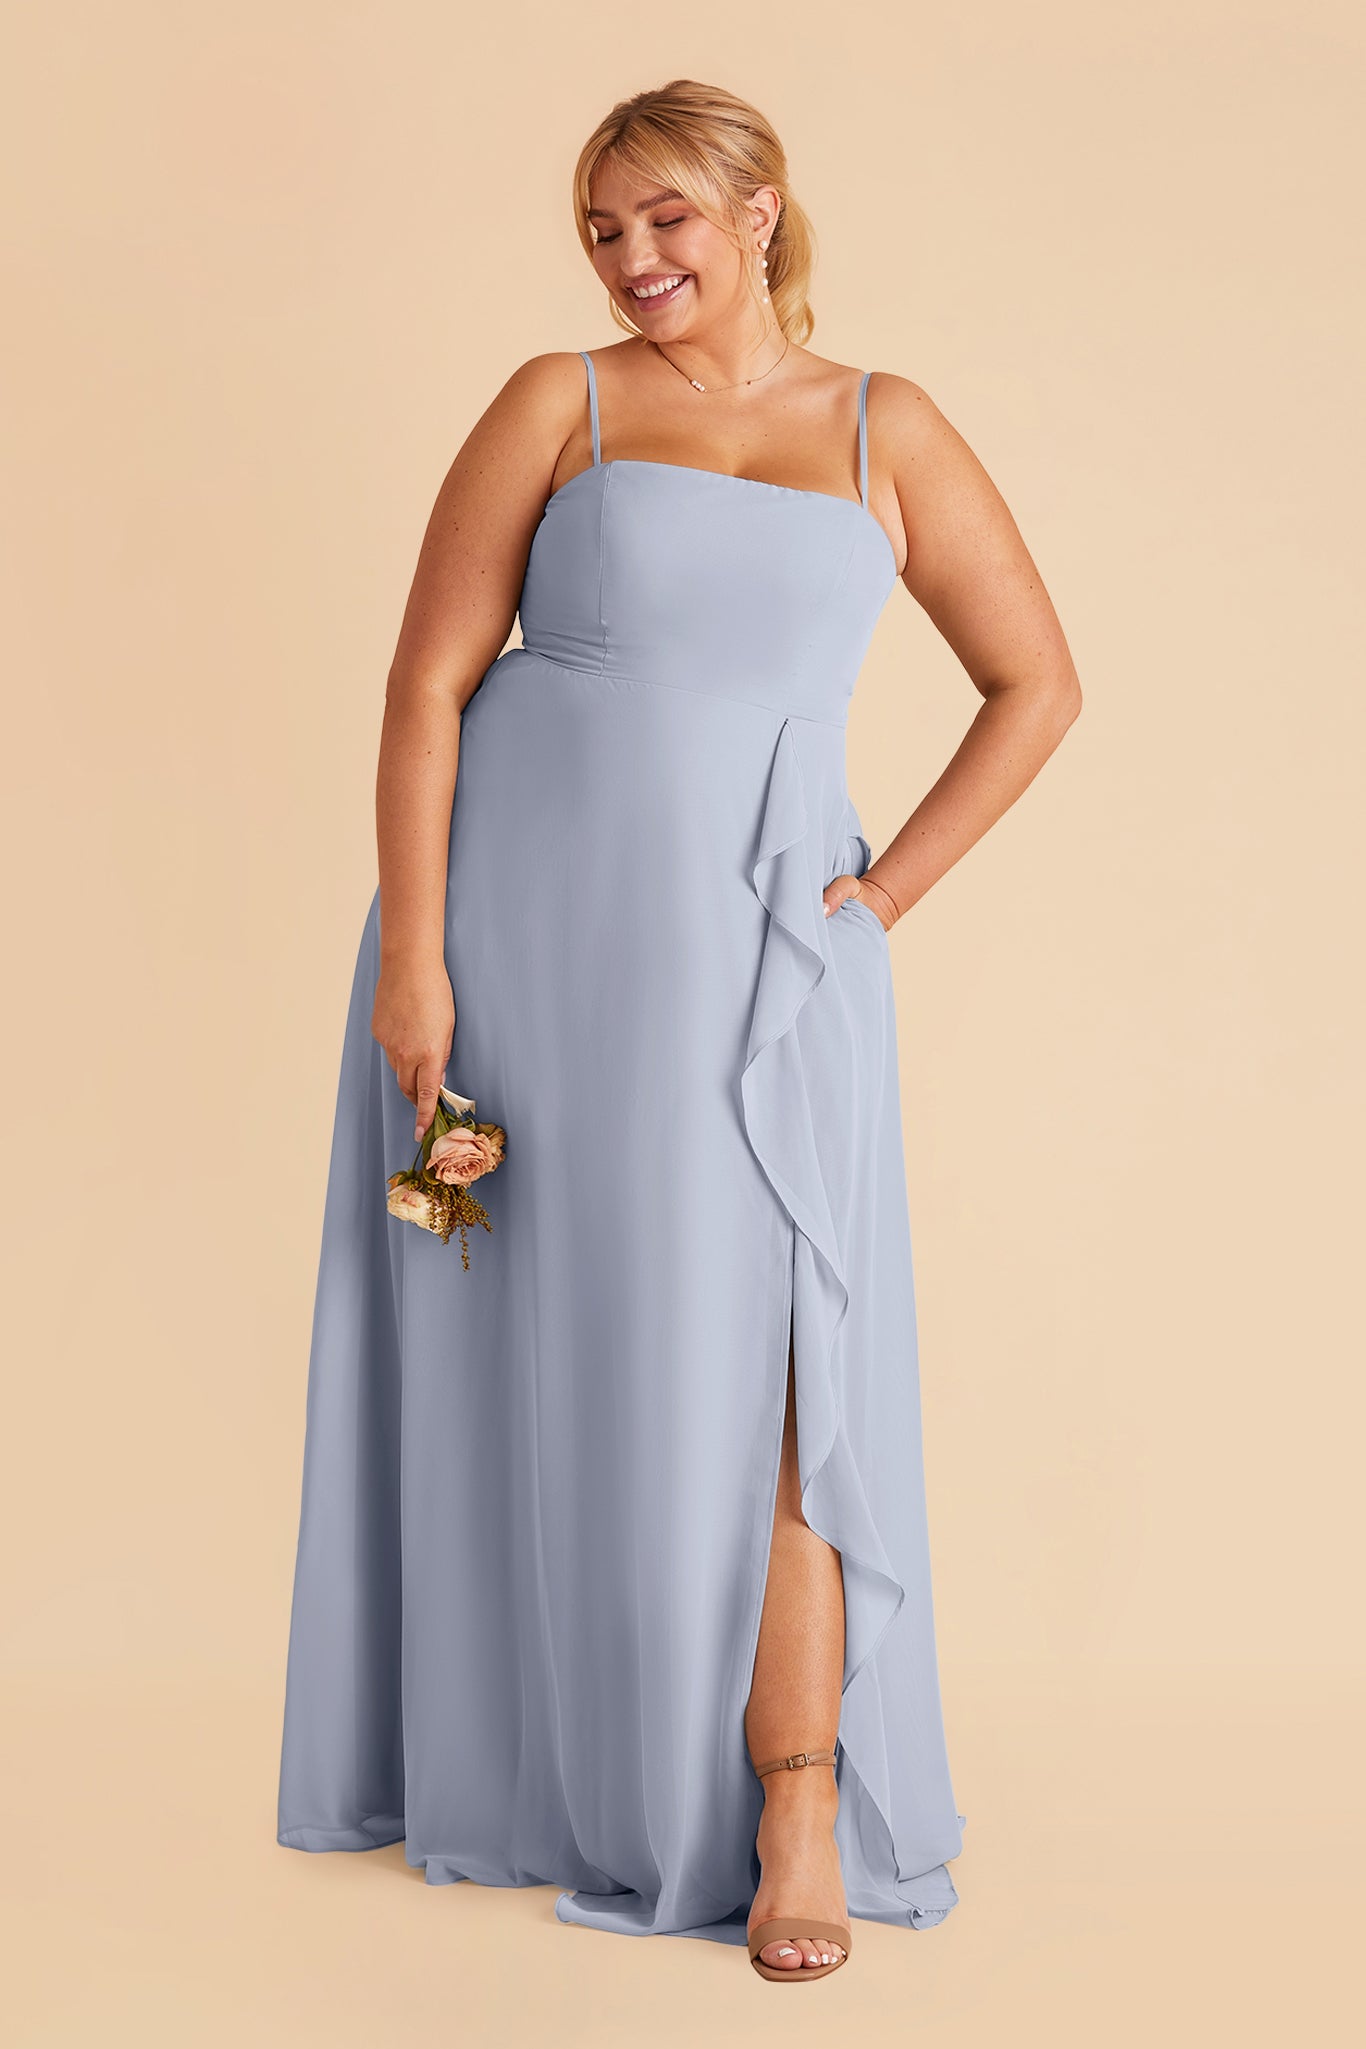 Winnie Convertible Chiffon Dress - Dusty Blue